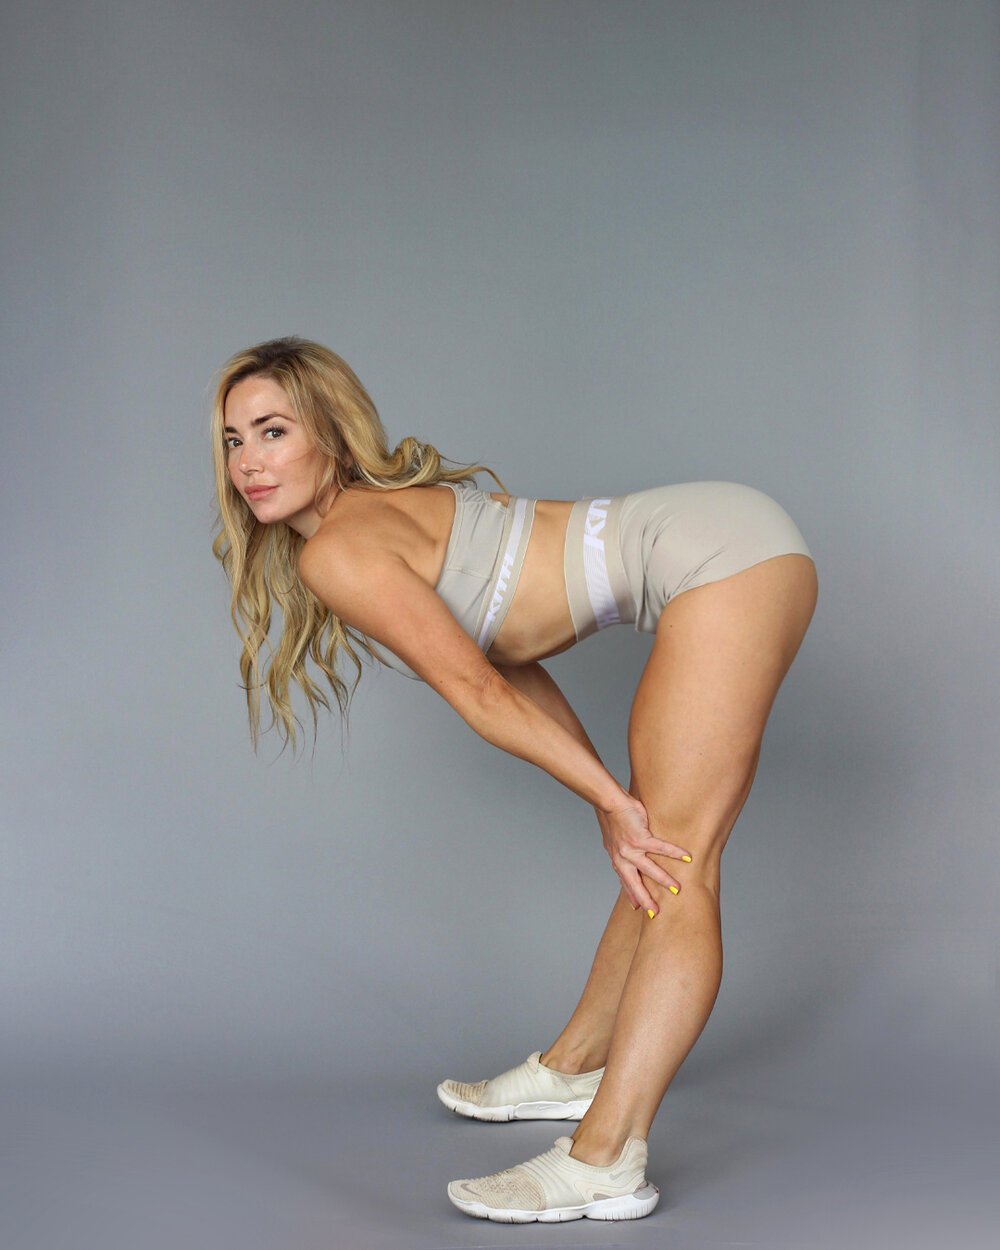 Lauren summer ass